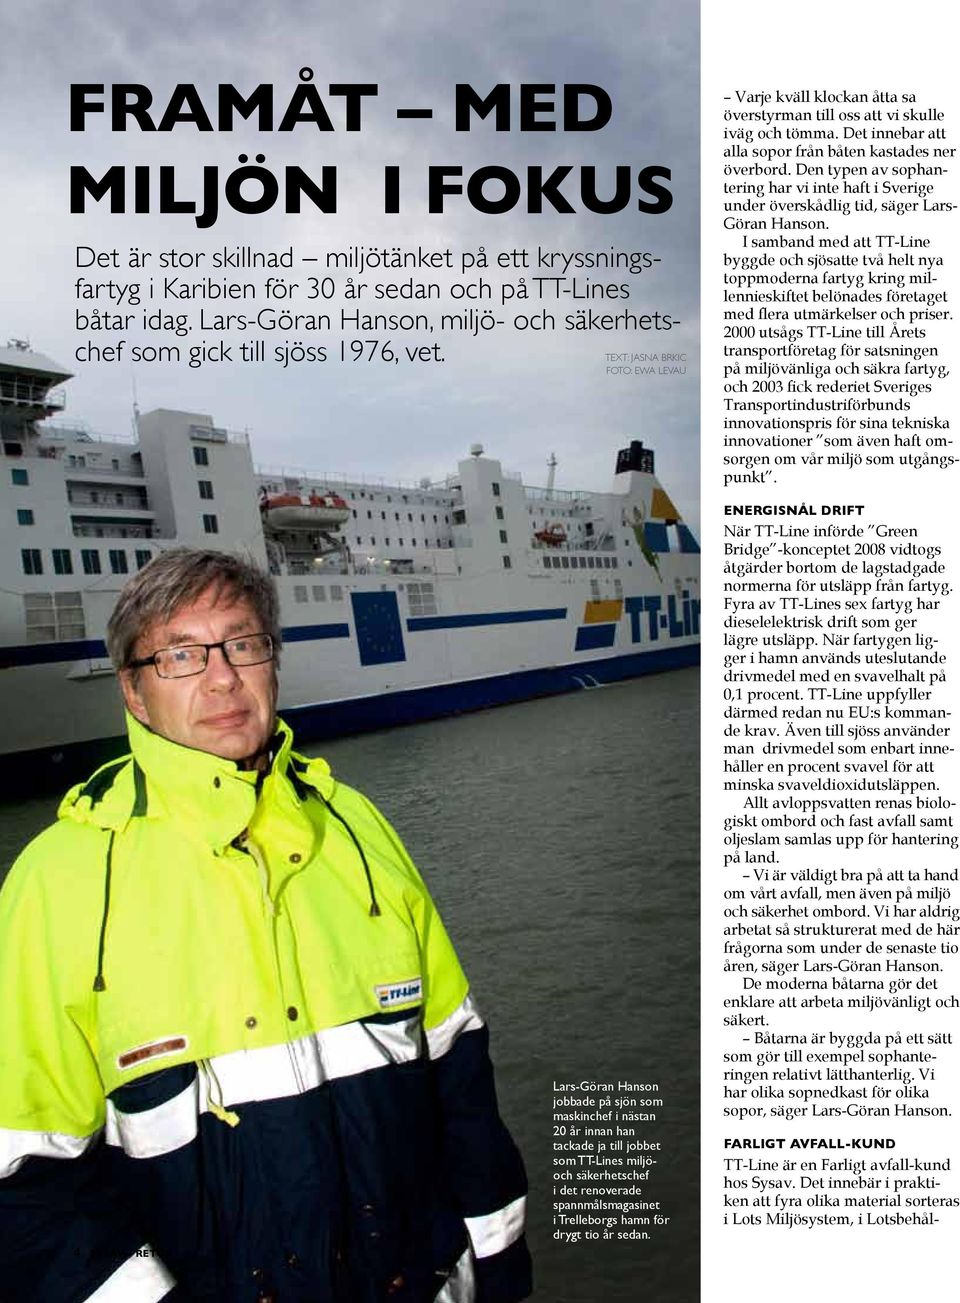 Det innebar att alla sopor från båten kastades ner överbord. Den typen av sophantering har vi inte haft i Sverige under överskådlig tid, säger Lars- Göran Hanson.